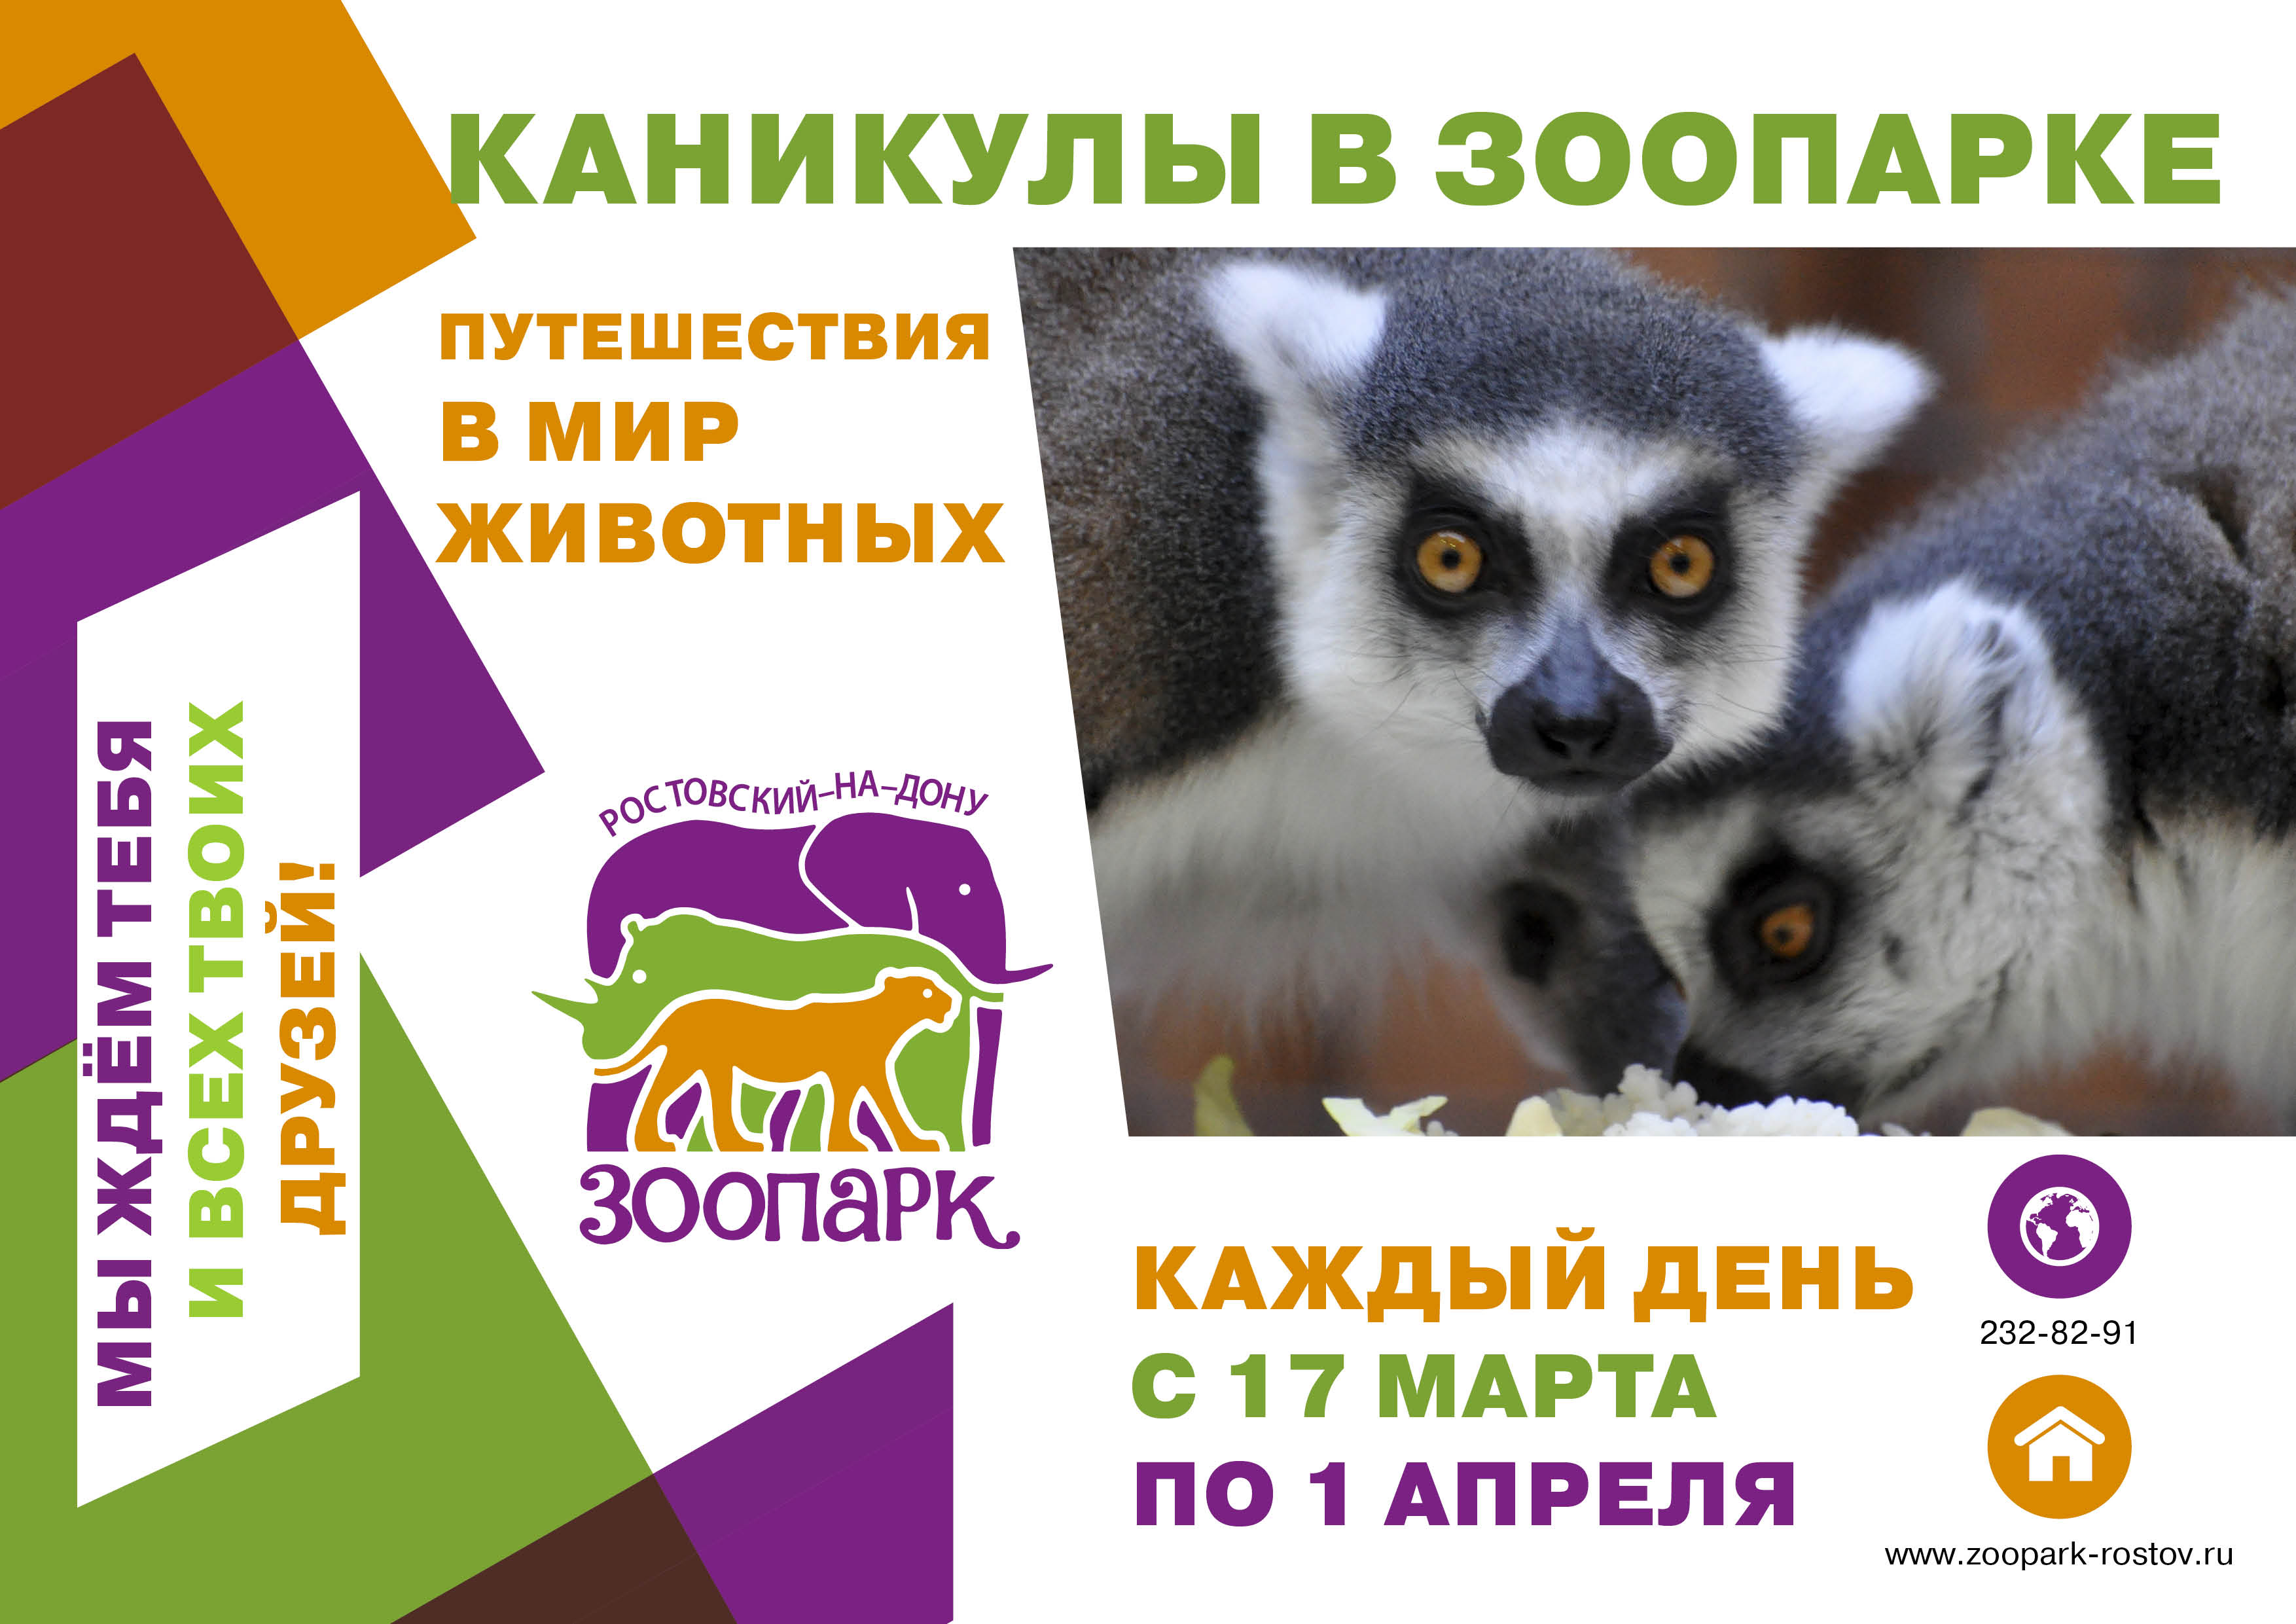 //Фото: пресс-служба Ростовского зоопарка